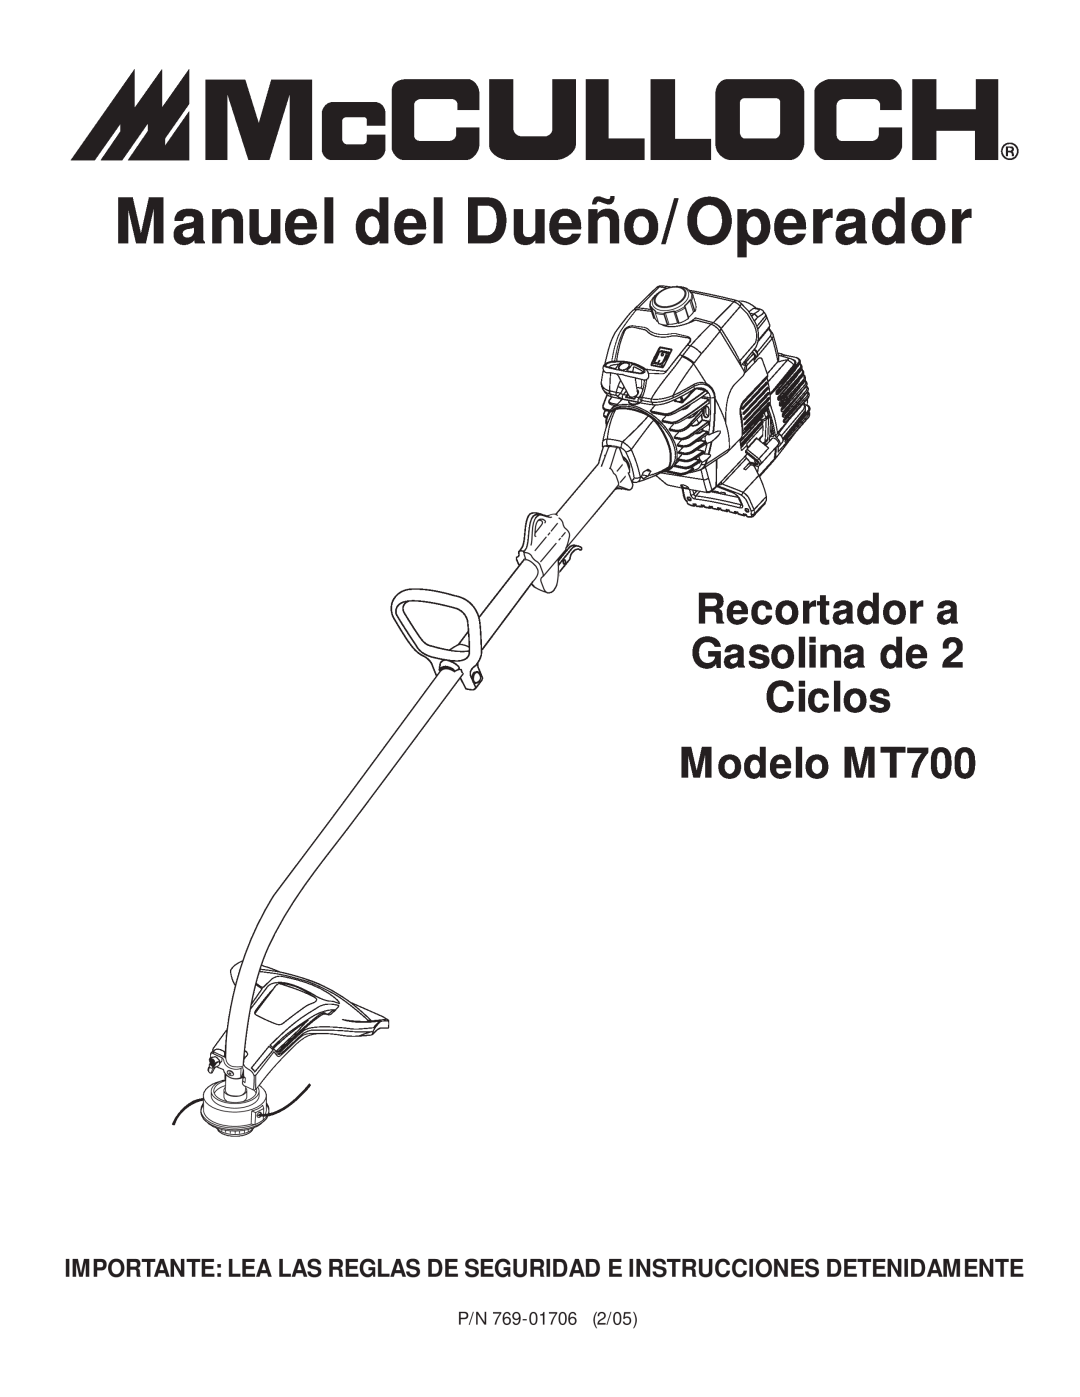 MTD manual Manuel del Dueño/Operador, Recortador a Gasolina de Ciclos Modelo MT700 